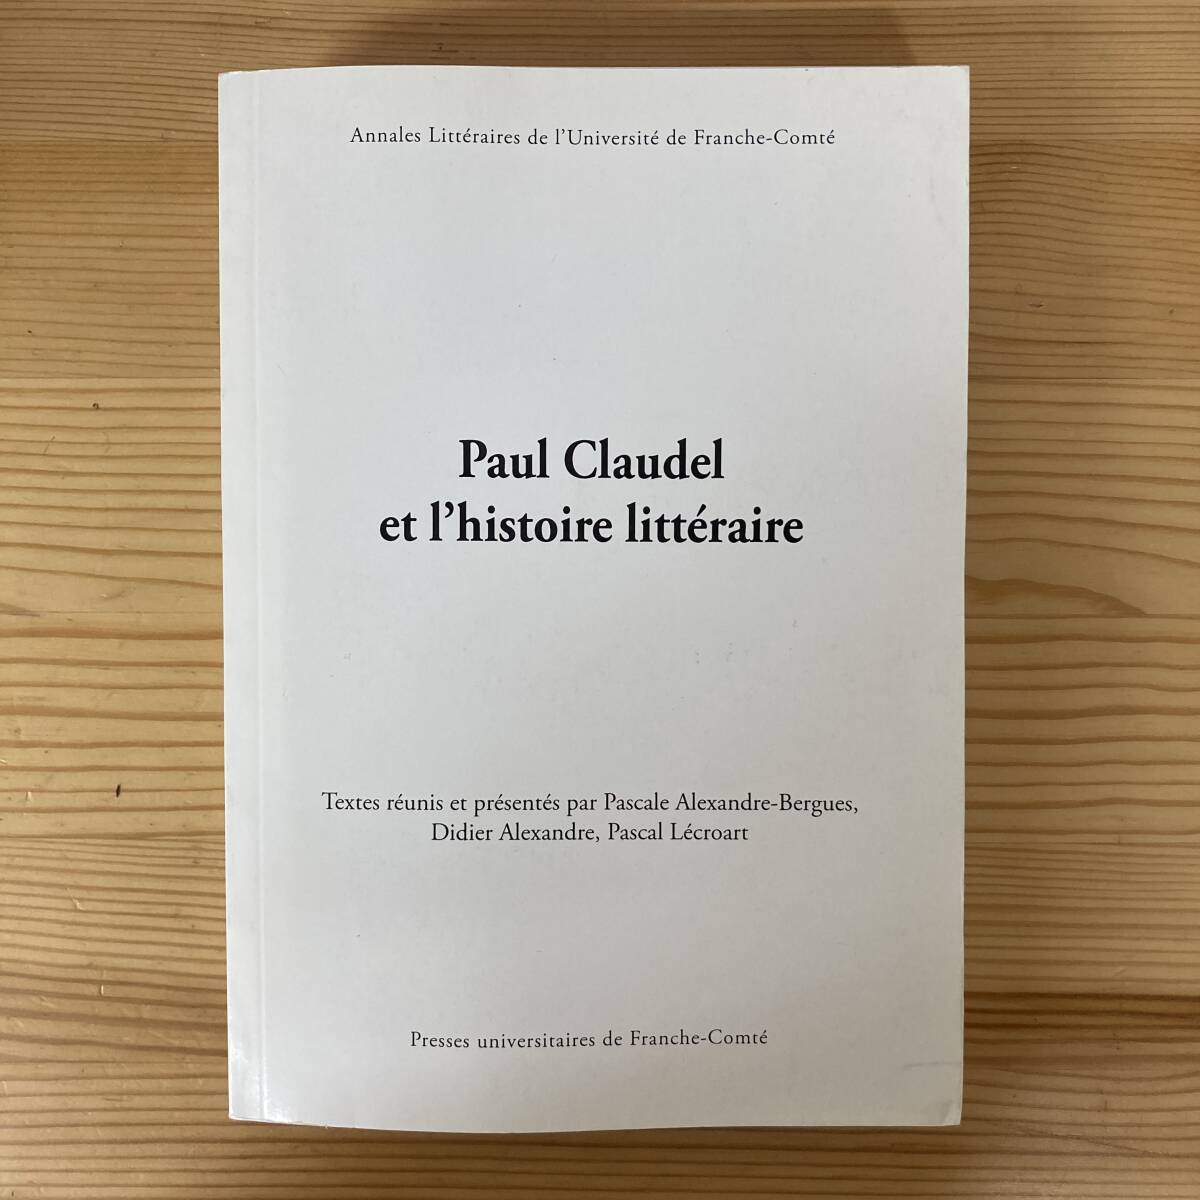 【仏語洋書】Paul Claudel et l’histoire litteraire / P.Alexandre-Bergues, D.Alexandre, P.Lecroart（編）【ポール・クローデル】_画像1